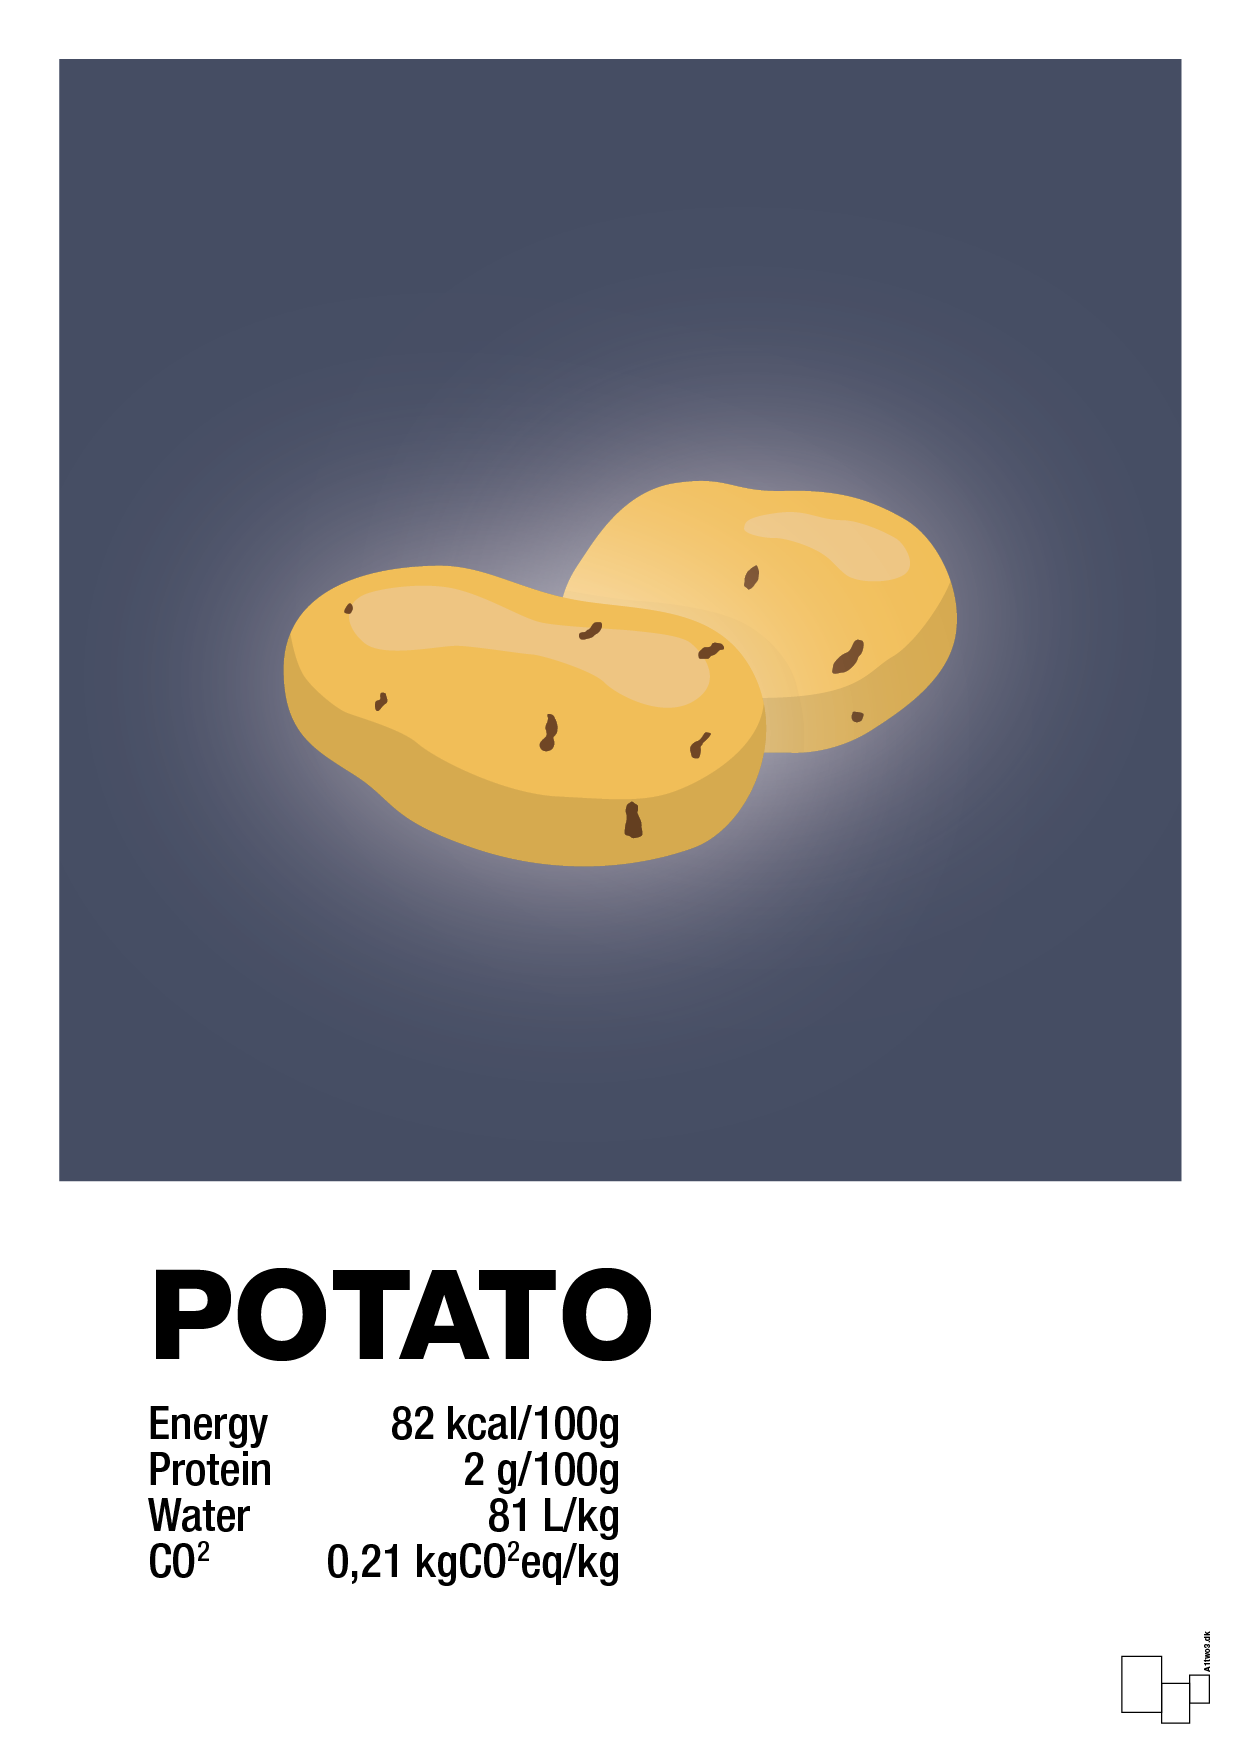 potato nutrition og miljø - Plakat med Mad & Drikke i Petrol